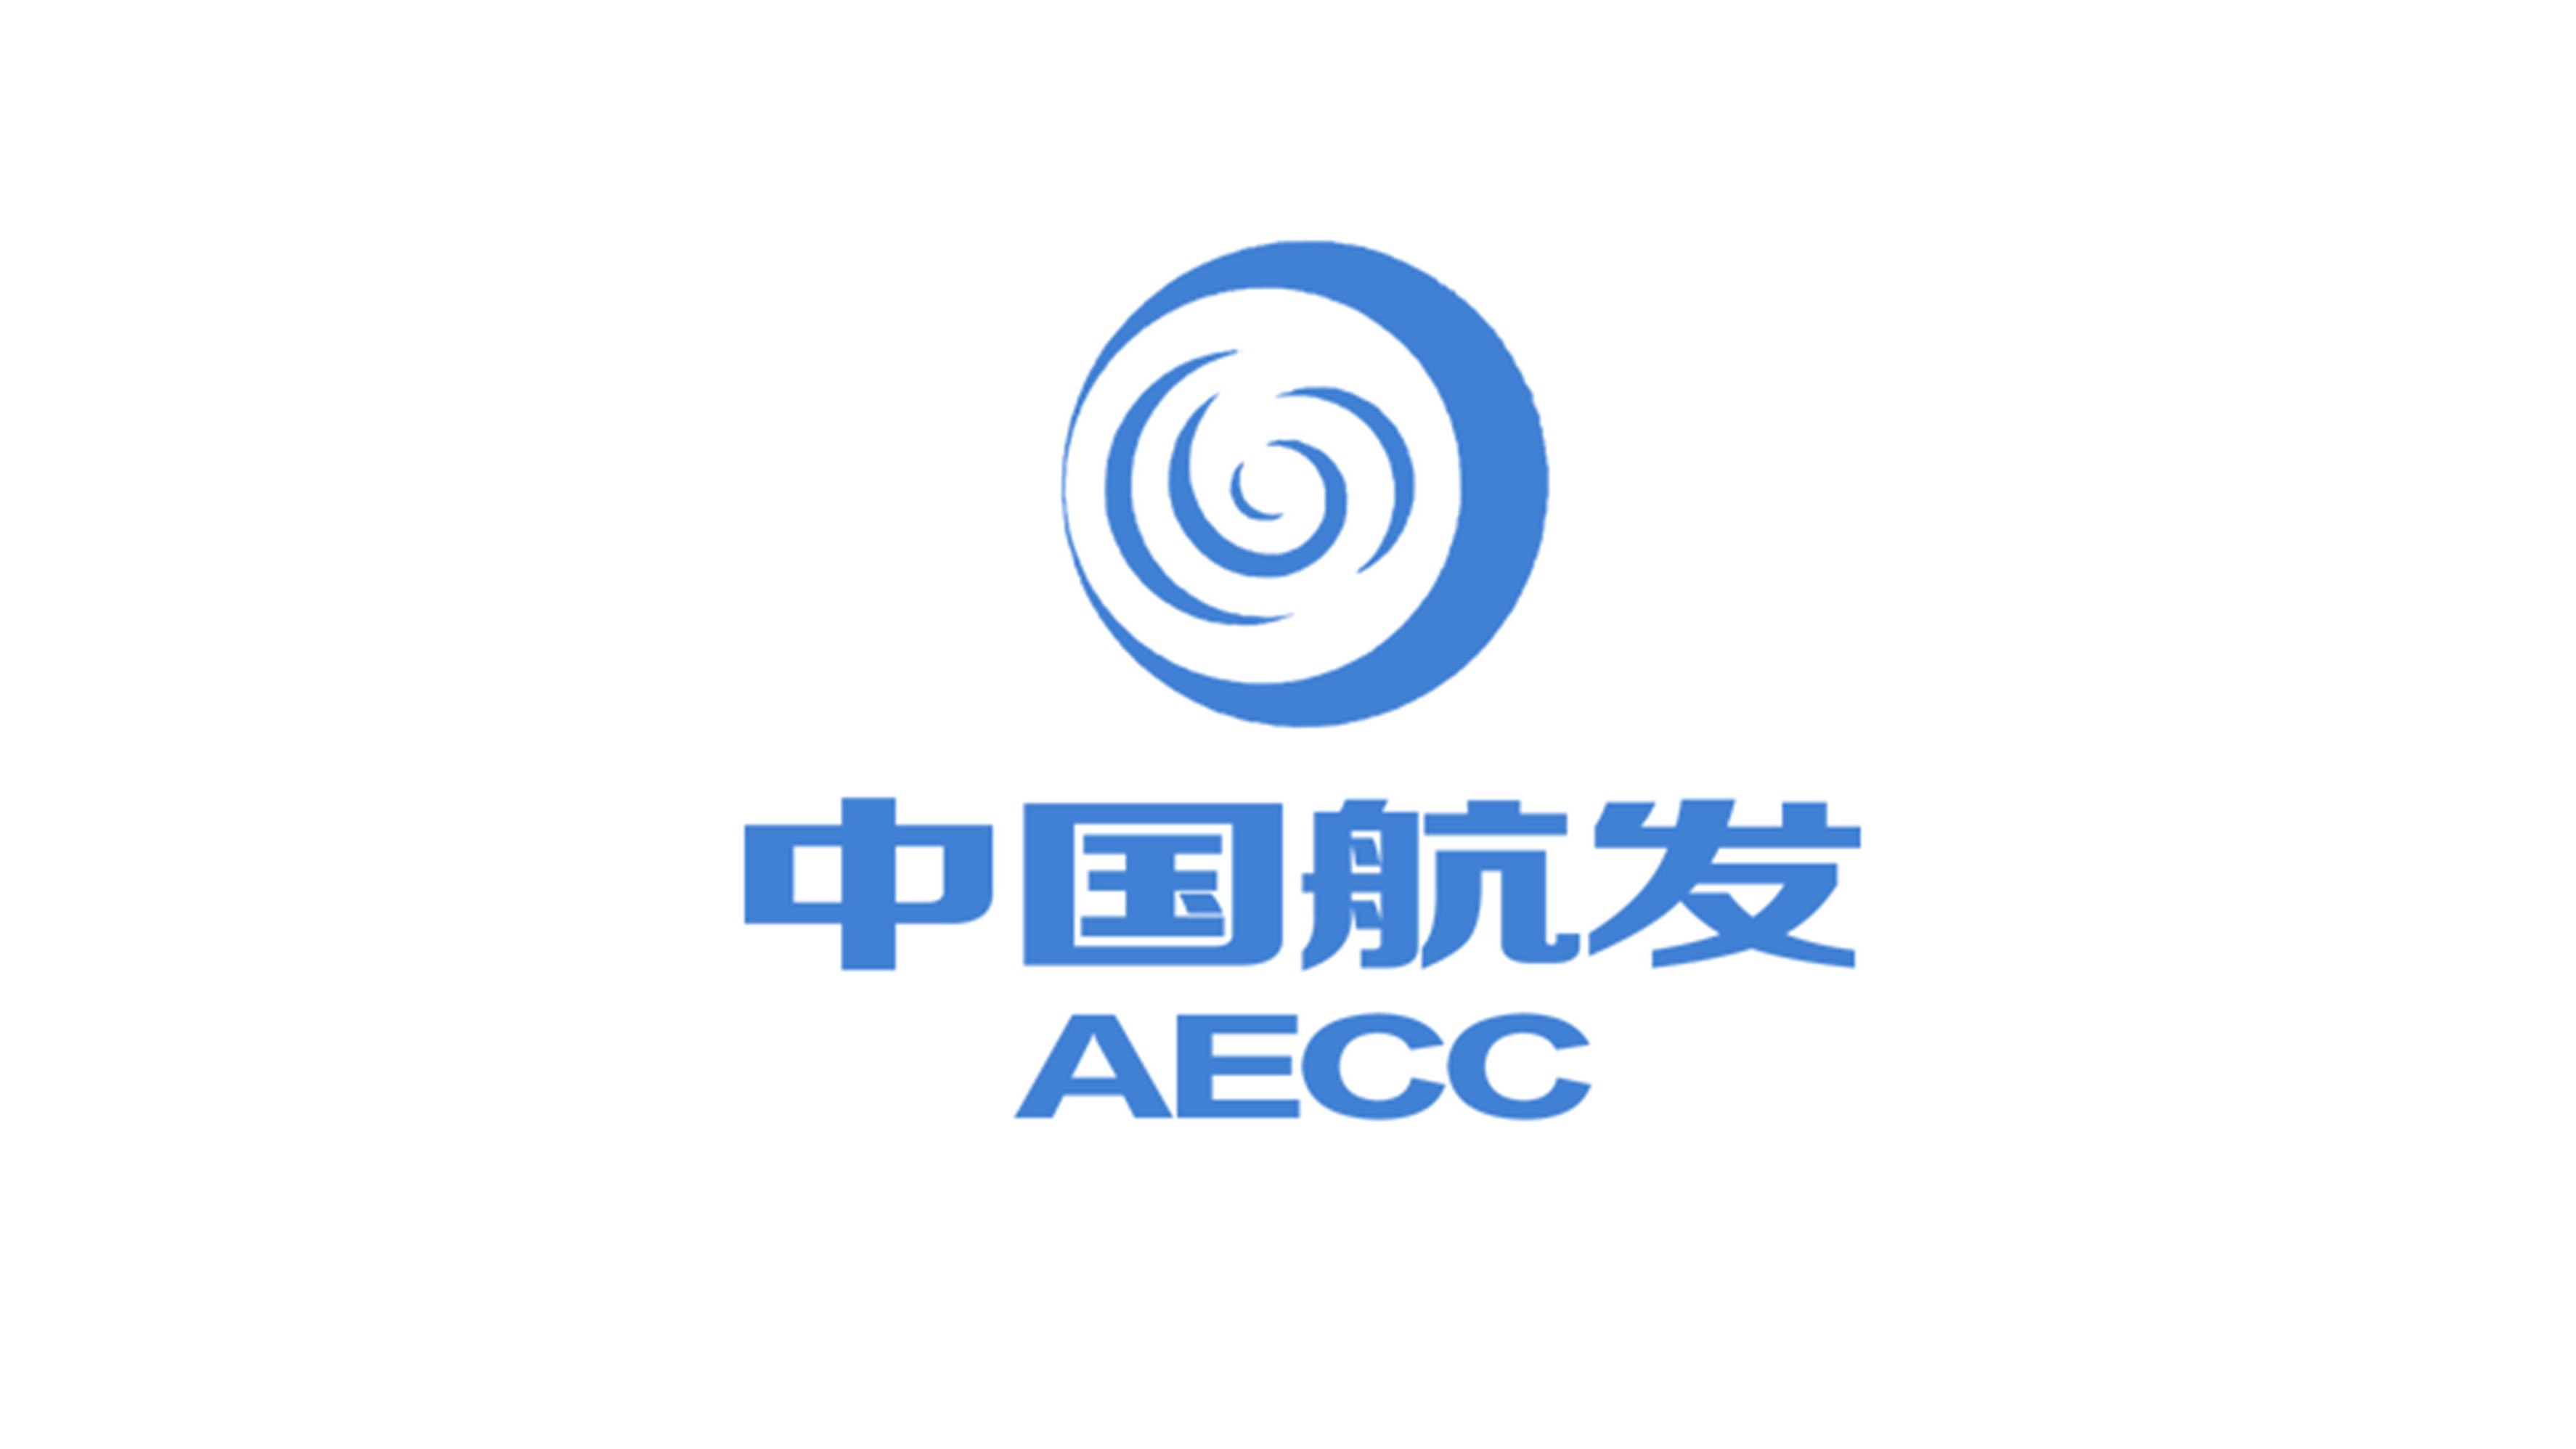 中国航发logo图片含义/演变/变迁及品牌介绍 - logo设计趋势